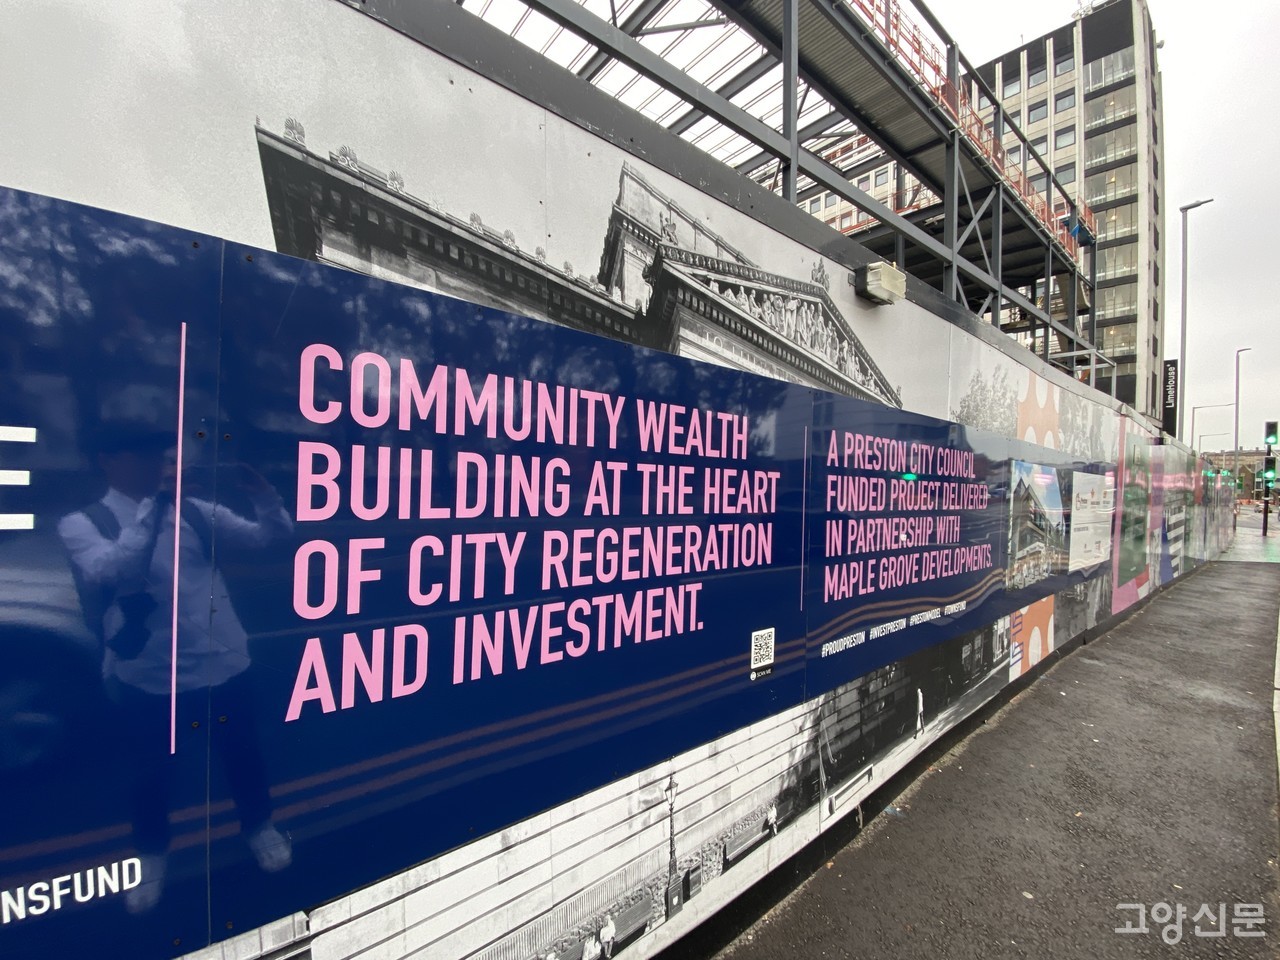 시의회가 추진중인 '공동체 부 구축(Community Wealth Building)'정책을 소개하는 문구